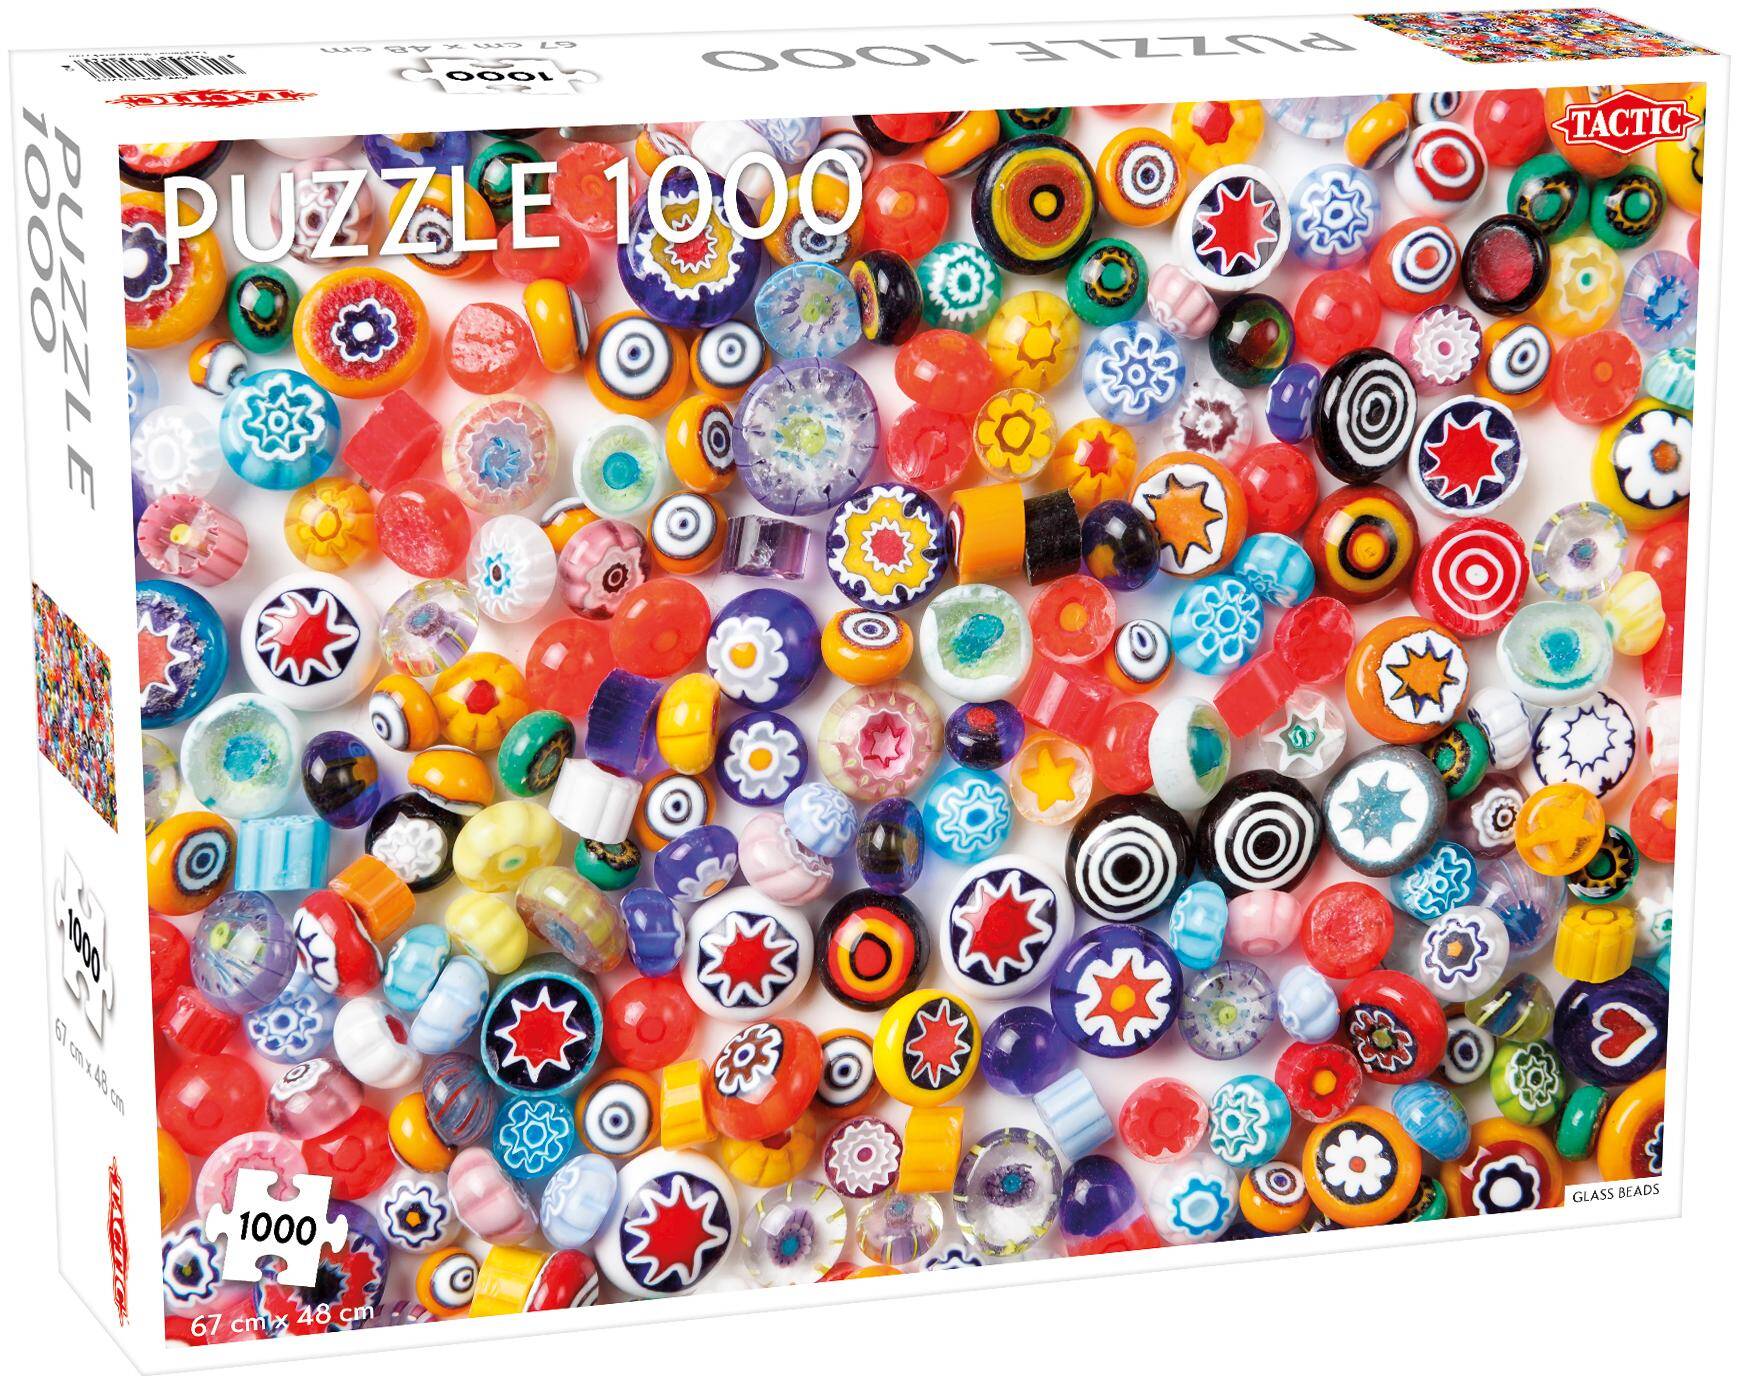 Puzzle 1000 Patterns Glass Beads Pattern